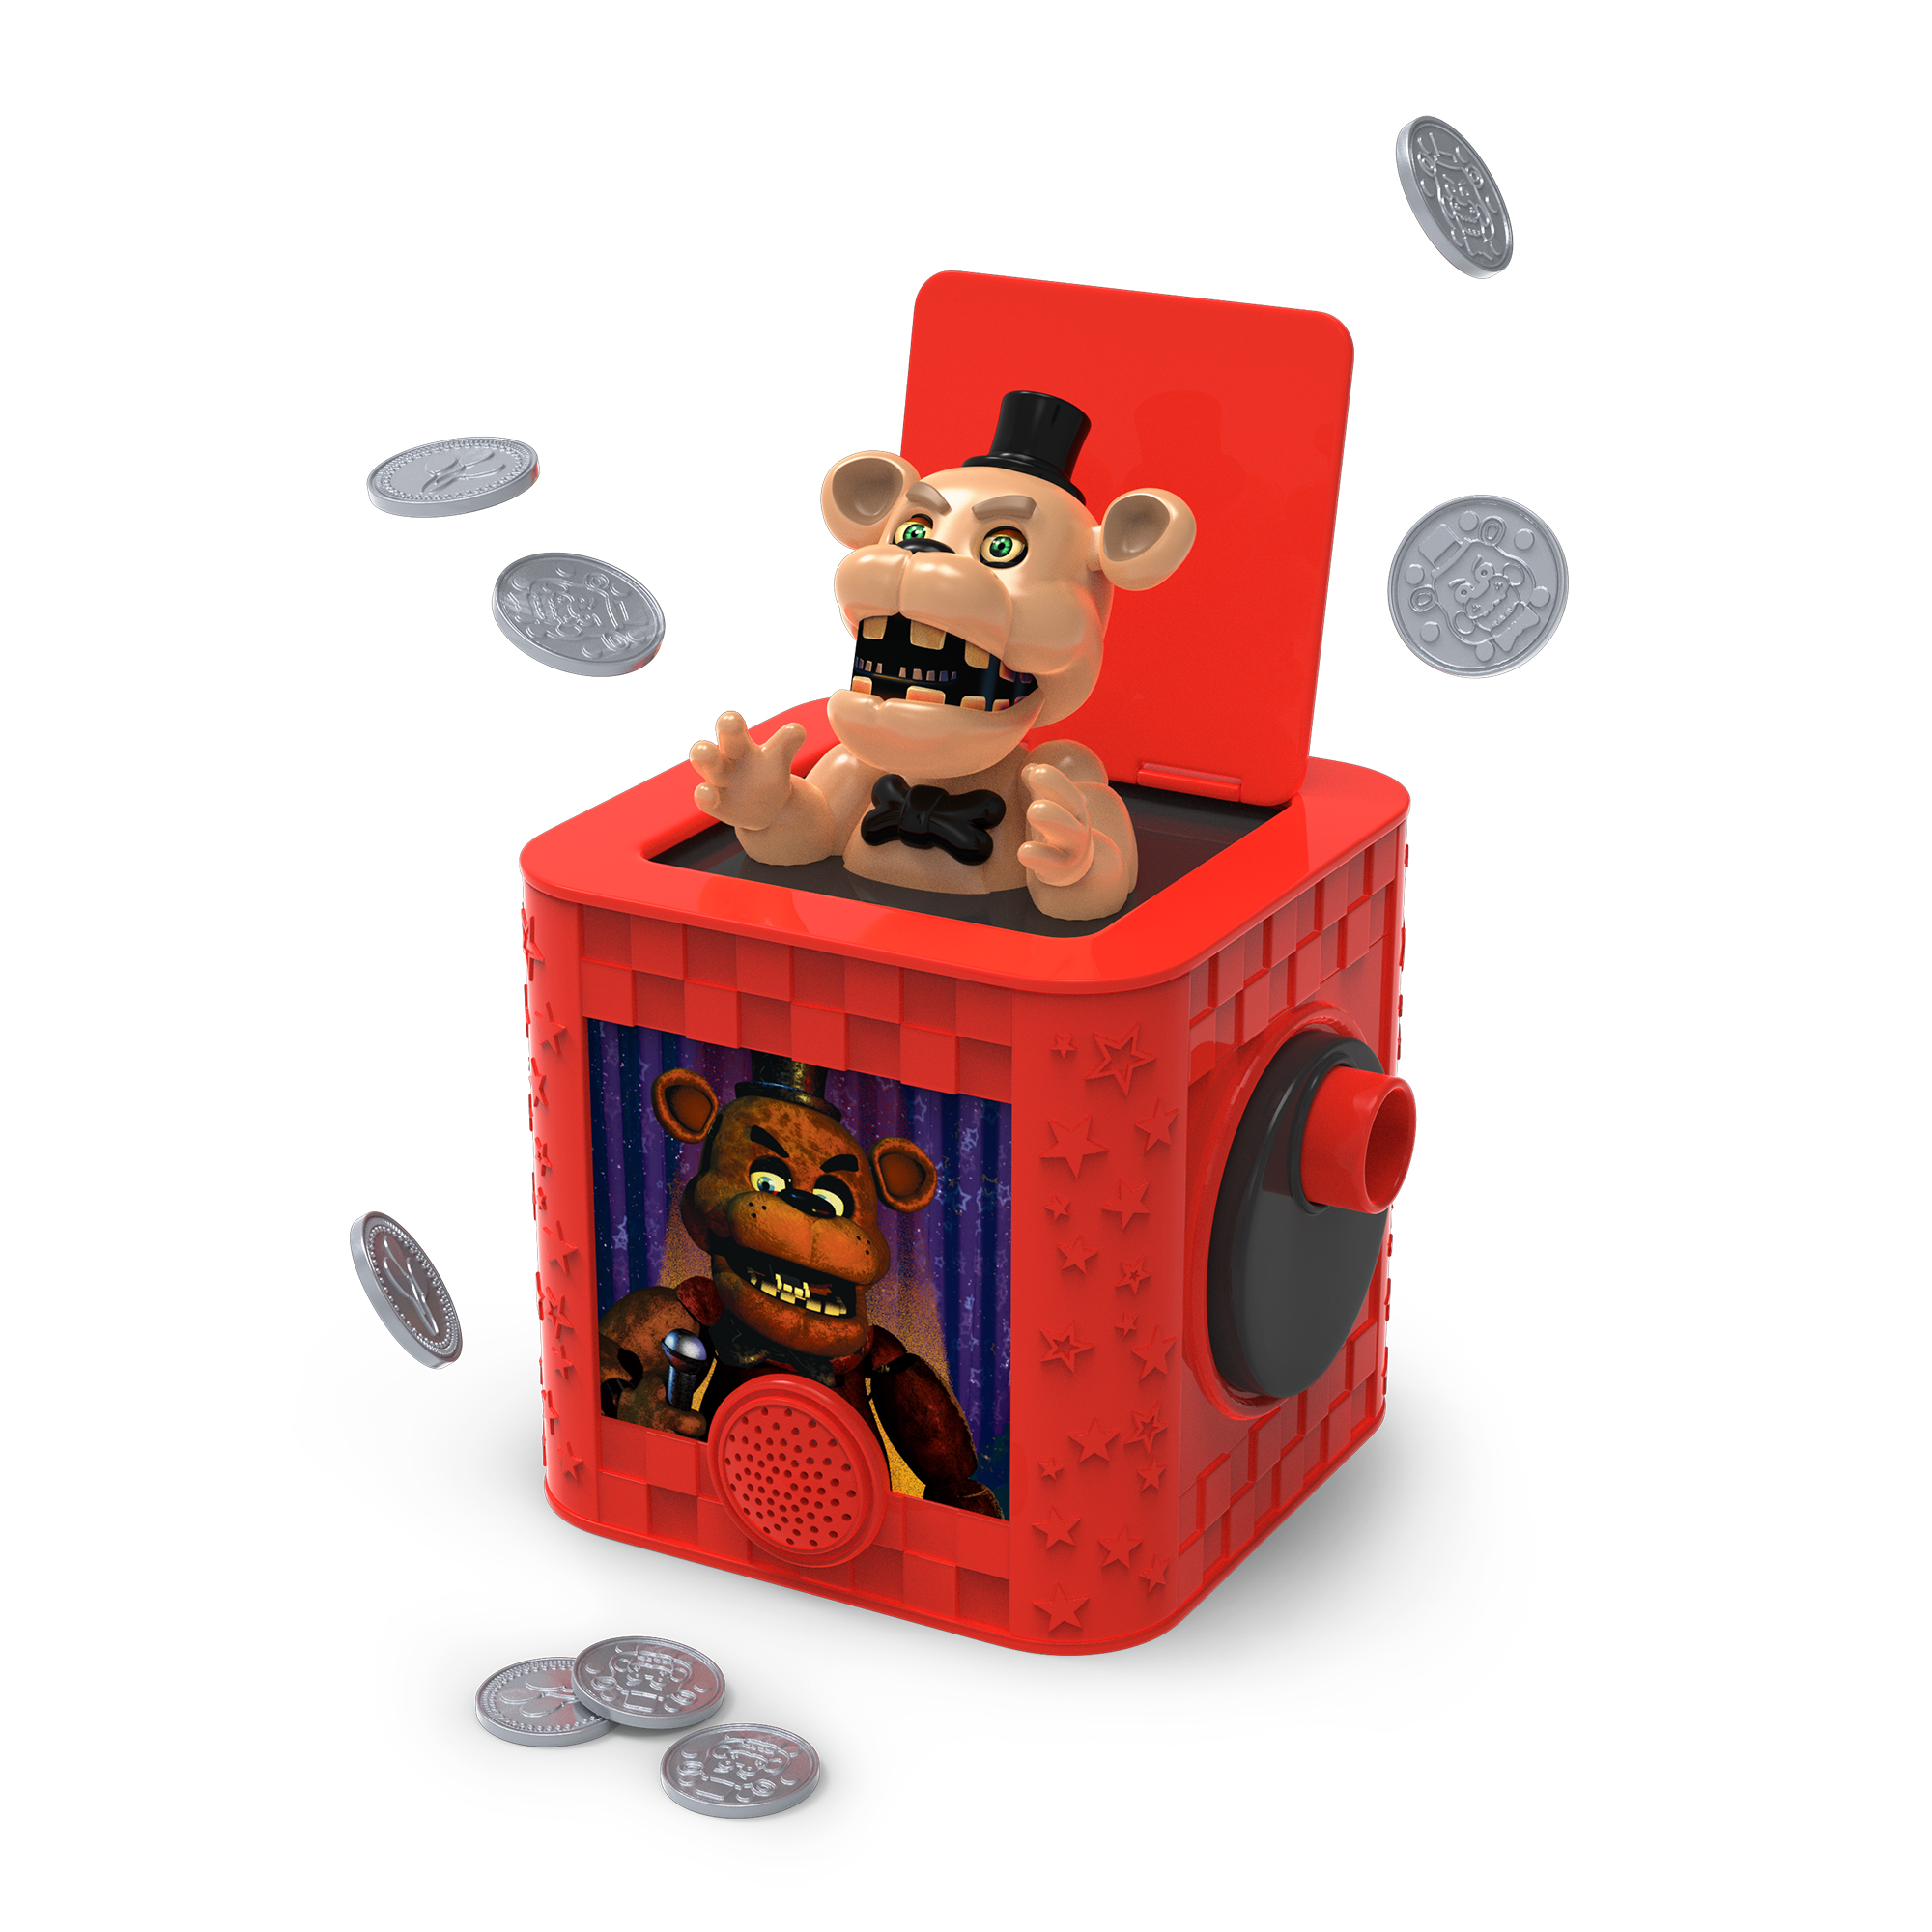 Freddy's Box